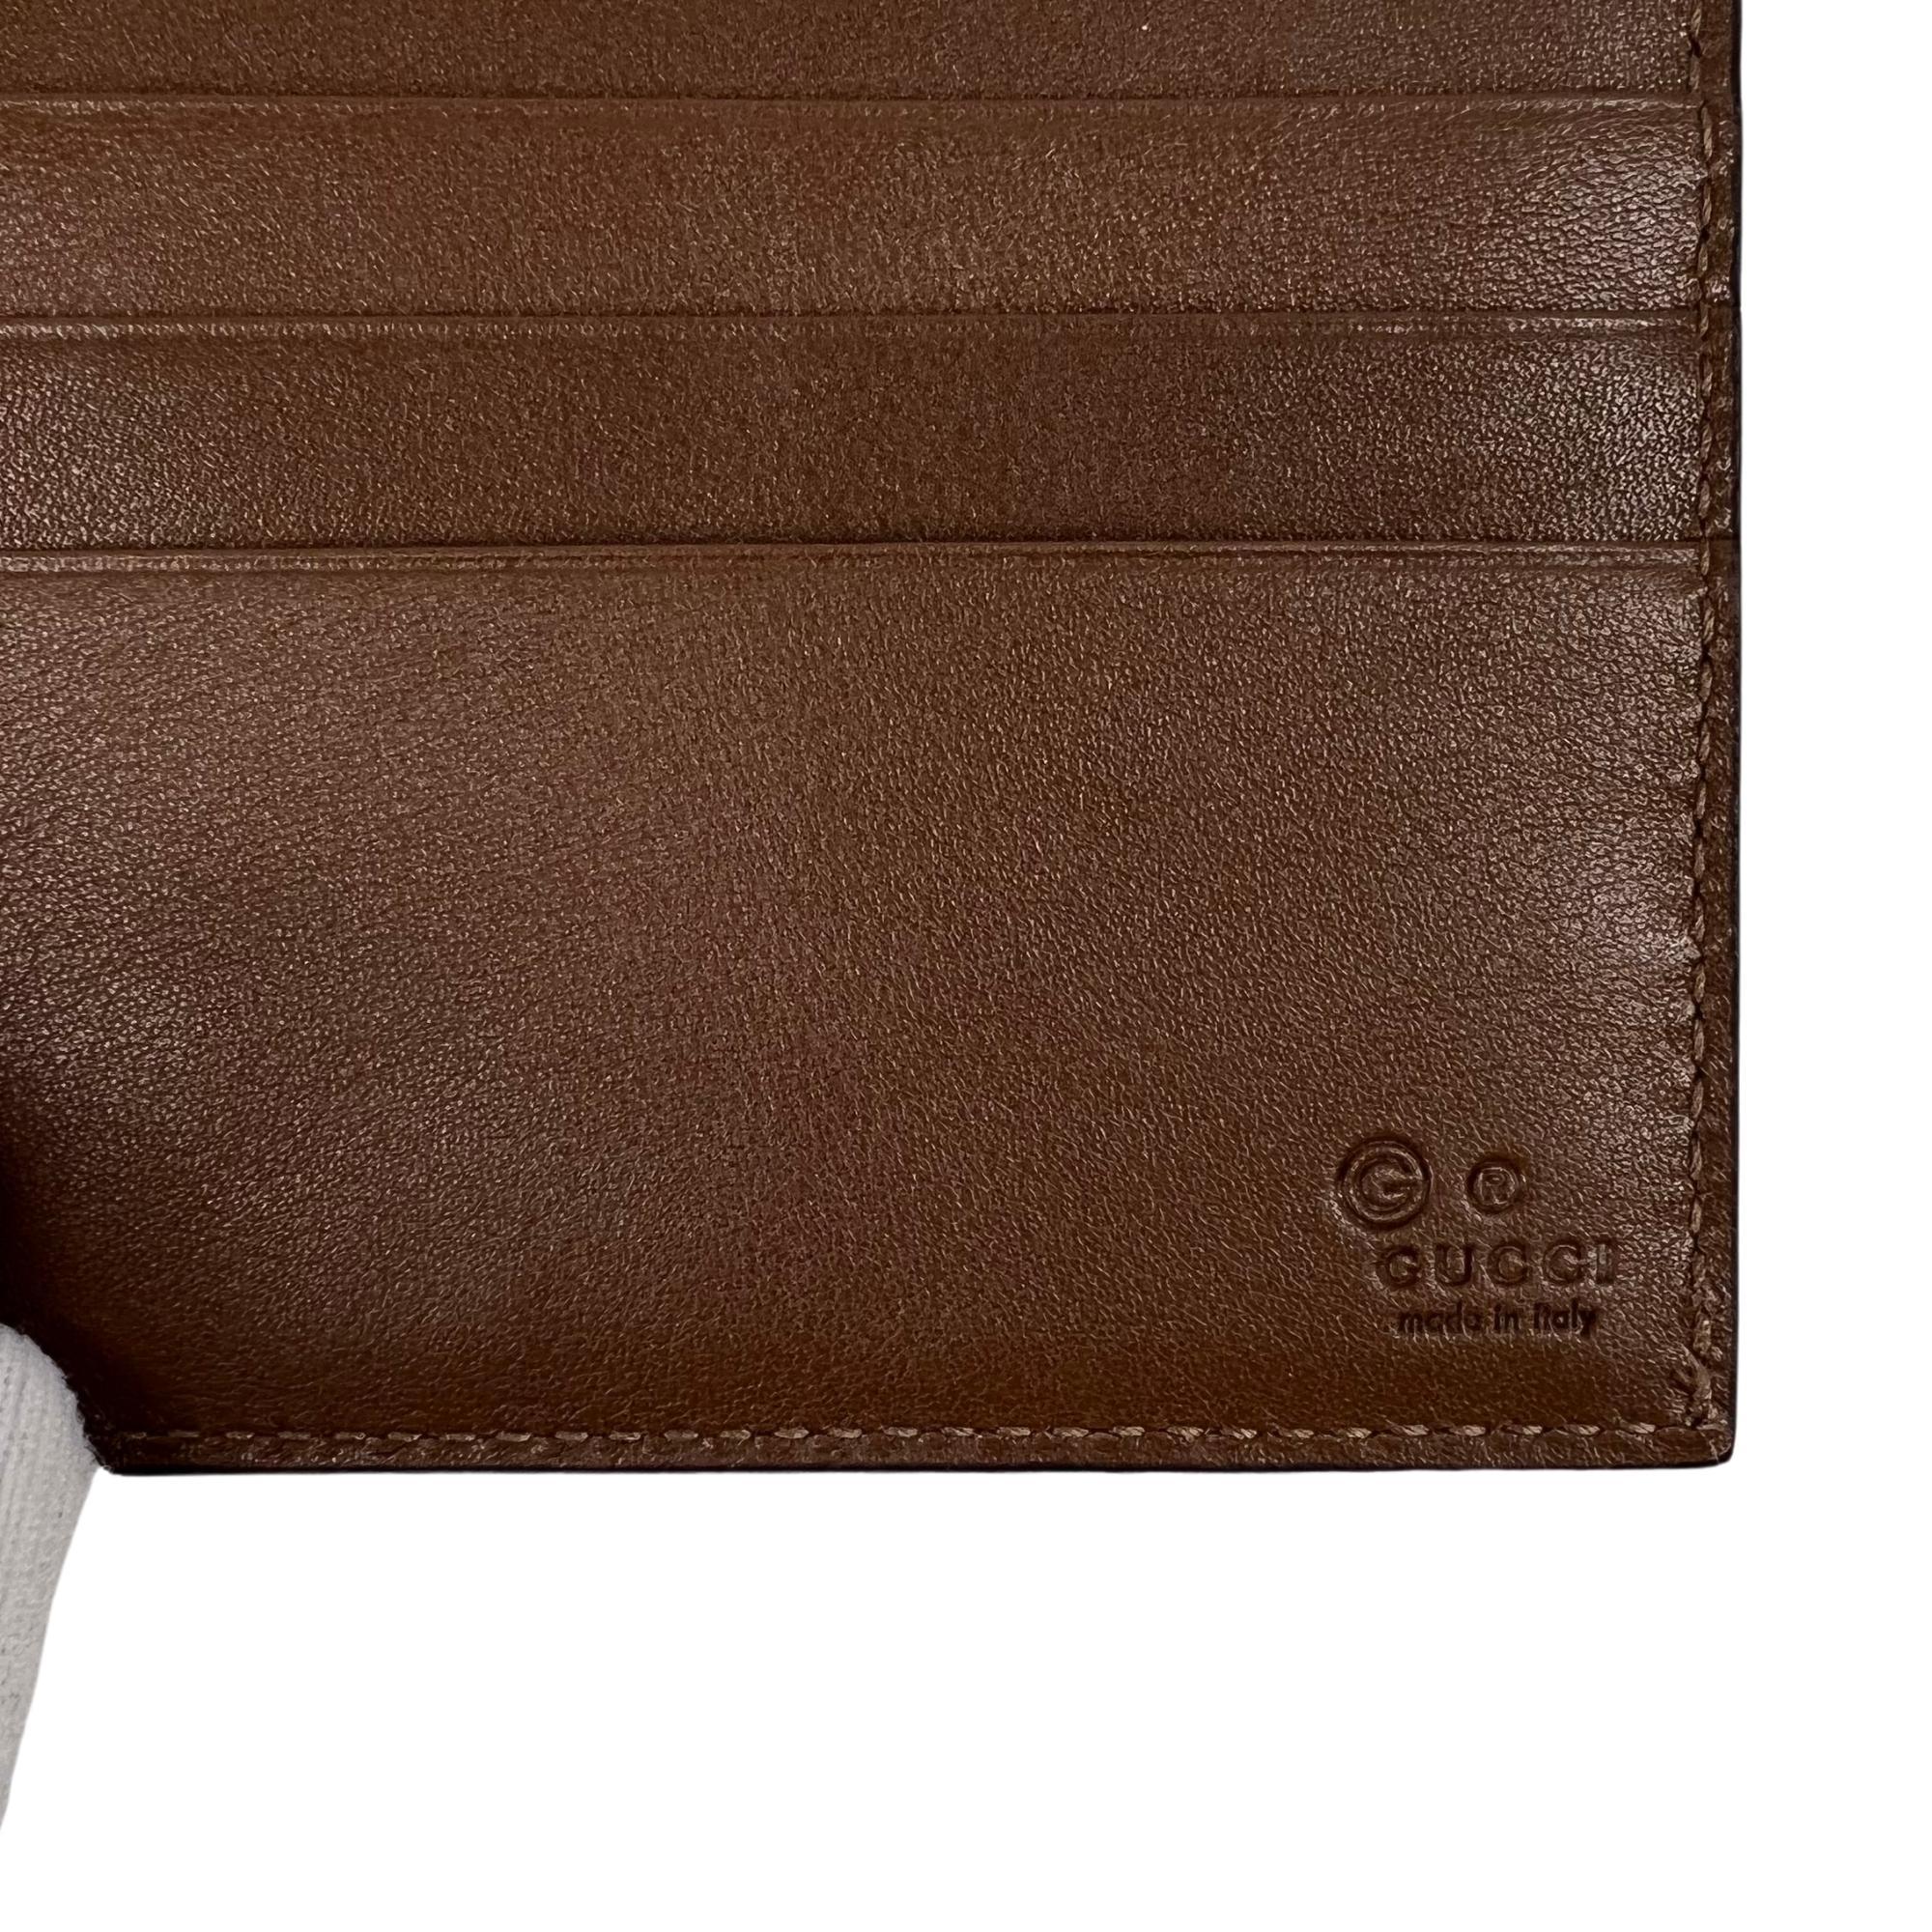 Black Gucci Microguccissima Bi-Fold Wallet TAN (273596)